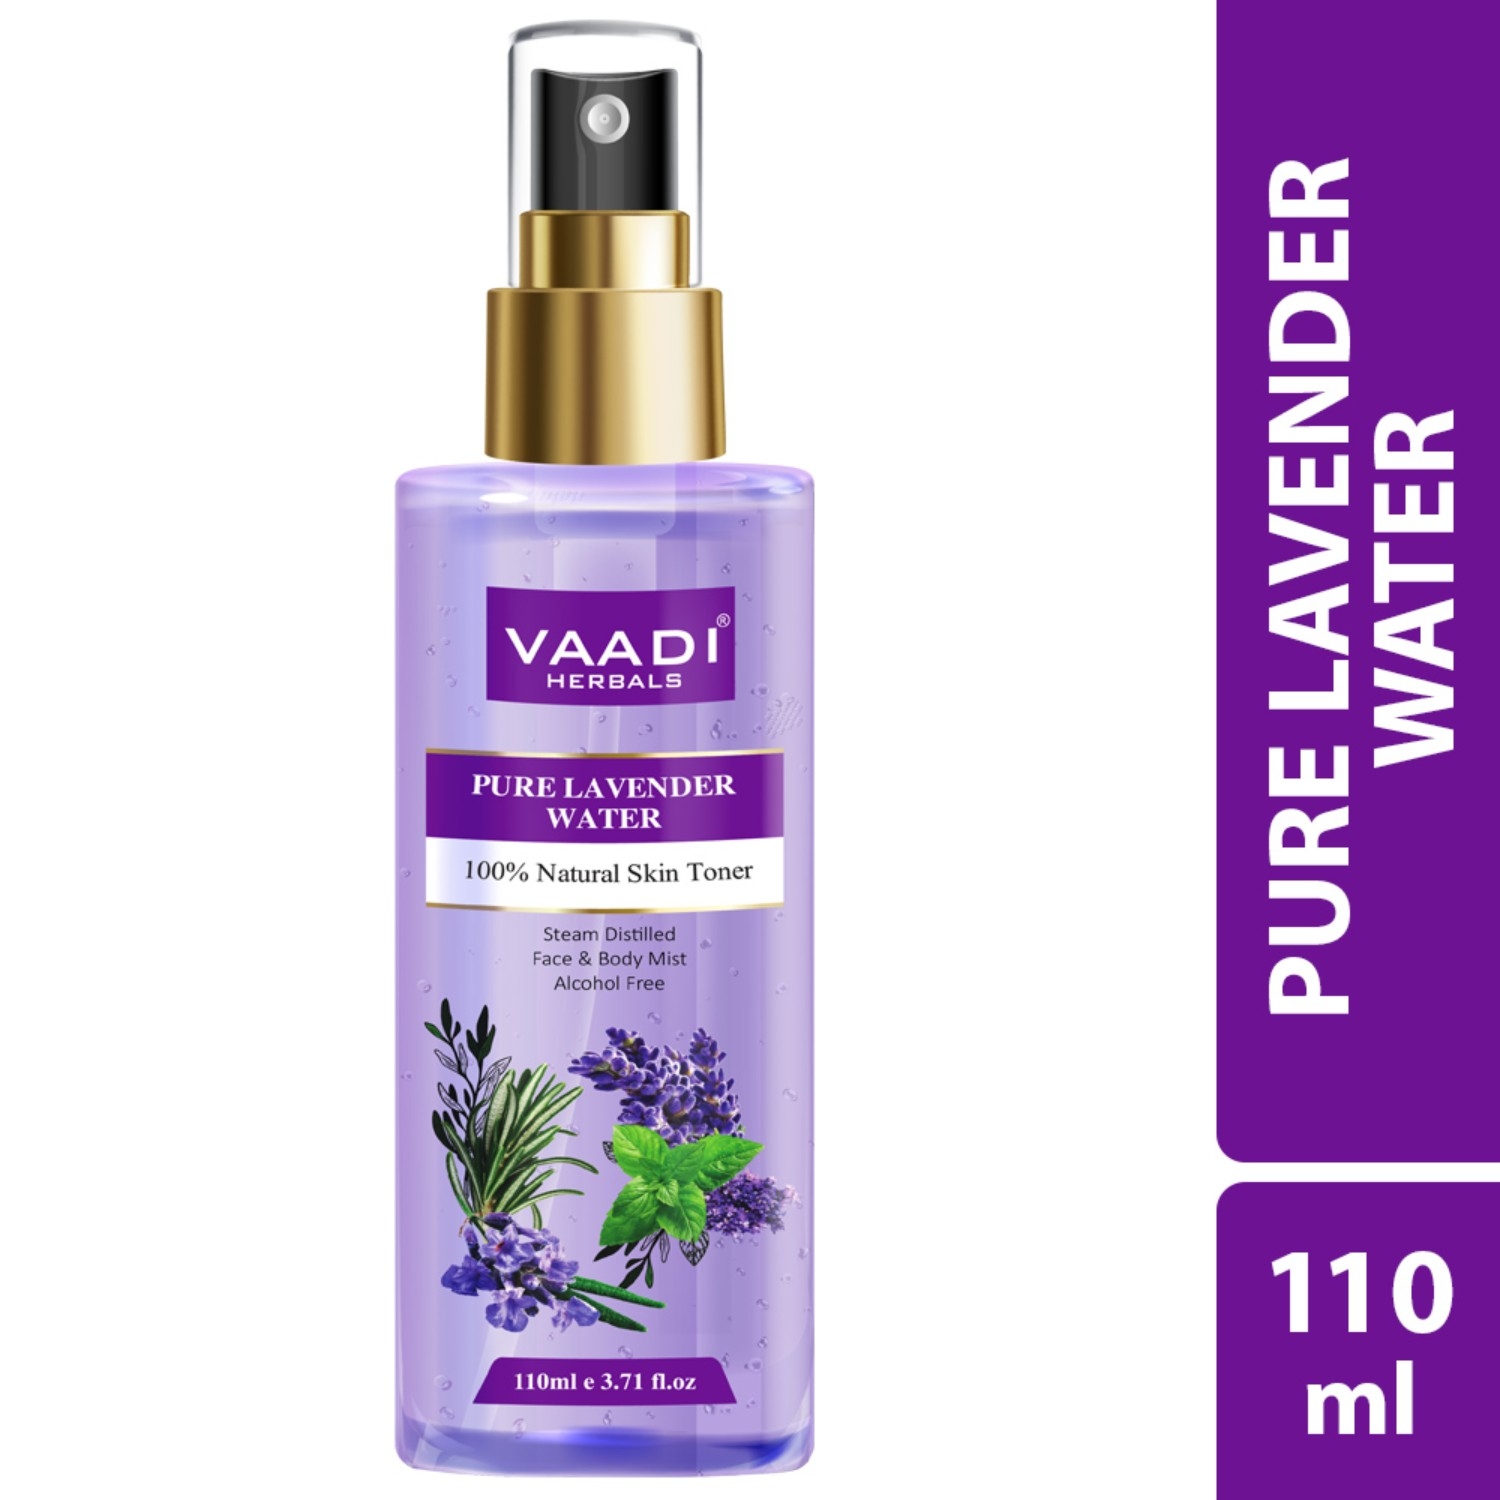 Vaadi Herbals | Vaadi Herbals Lavender Water 100% Natural and Pure Skin Toner (250ml)